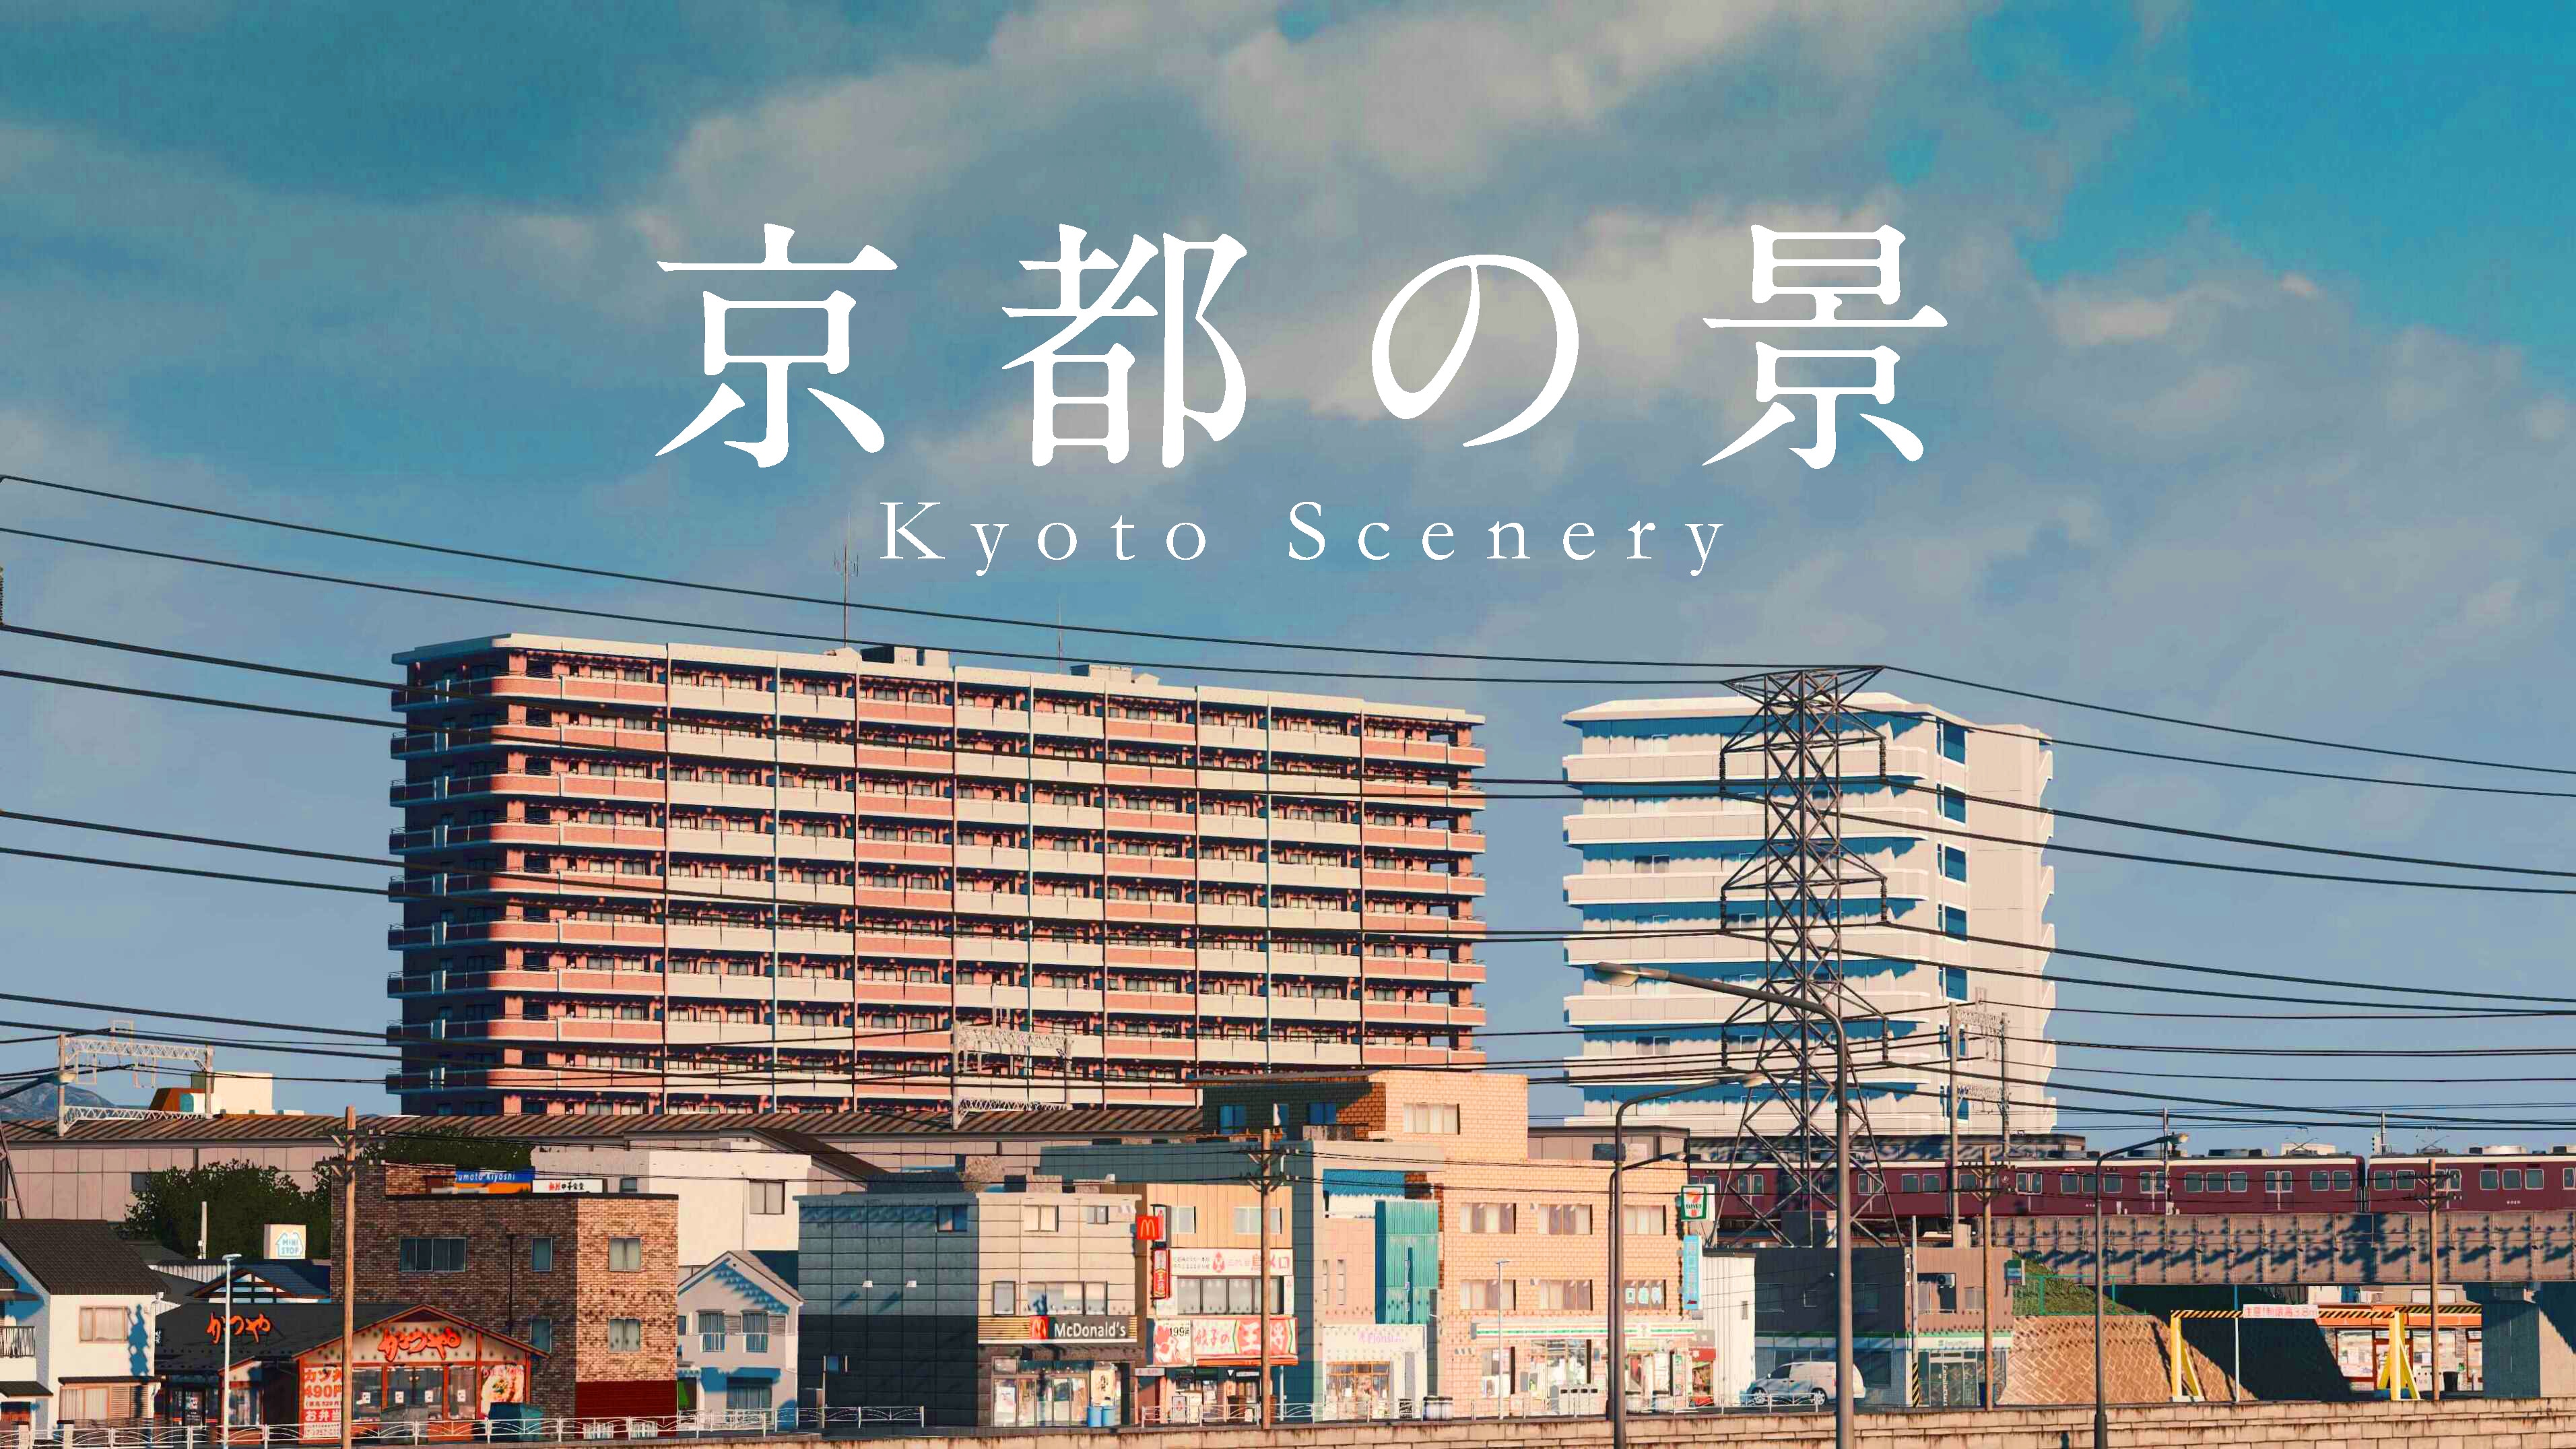 Steam 创意工坊 Project Kyoto Assets 京都企划 资产合集